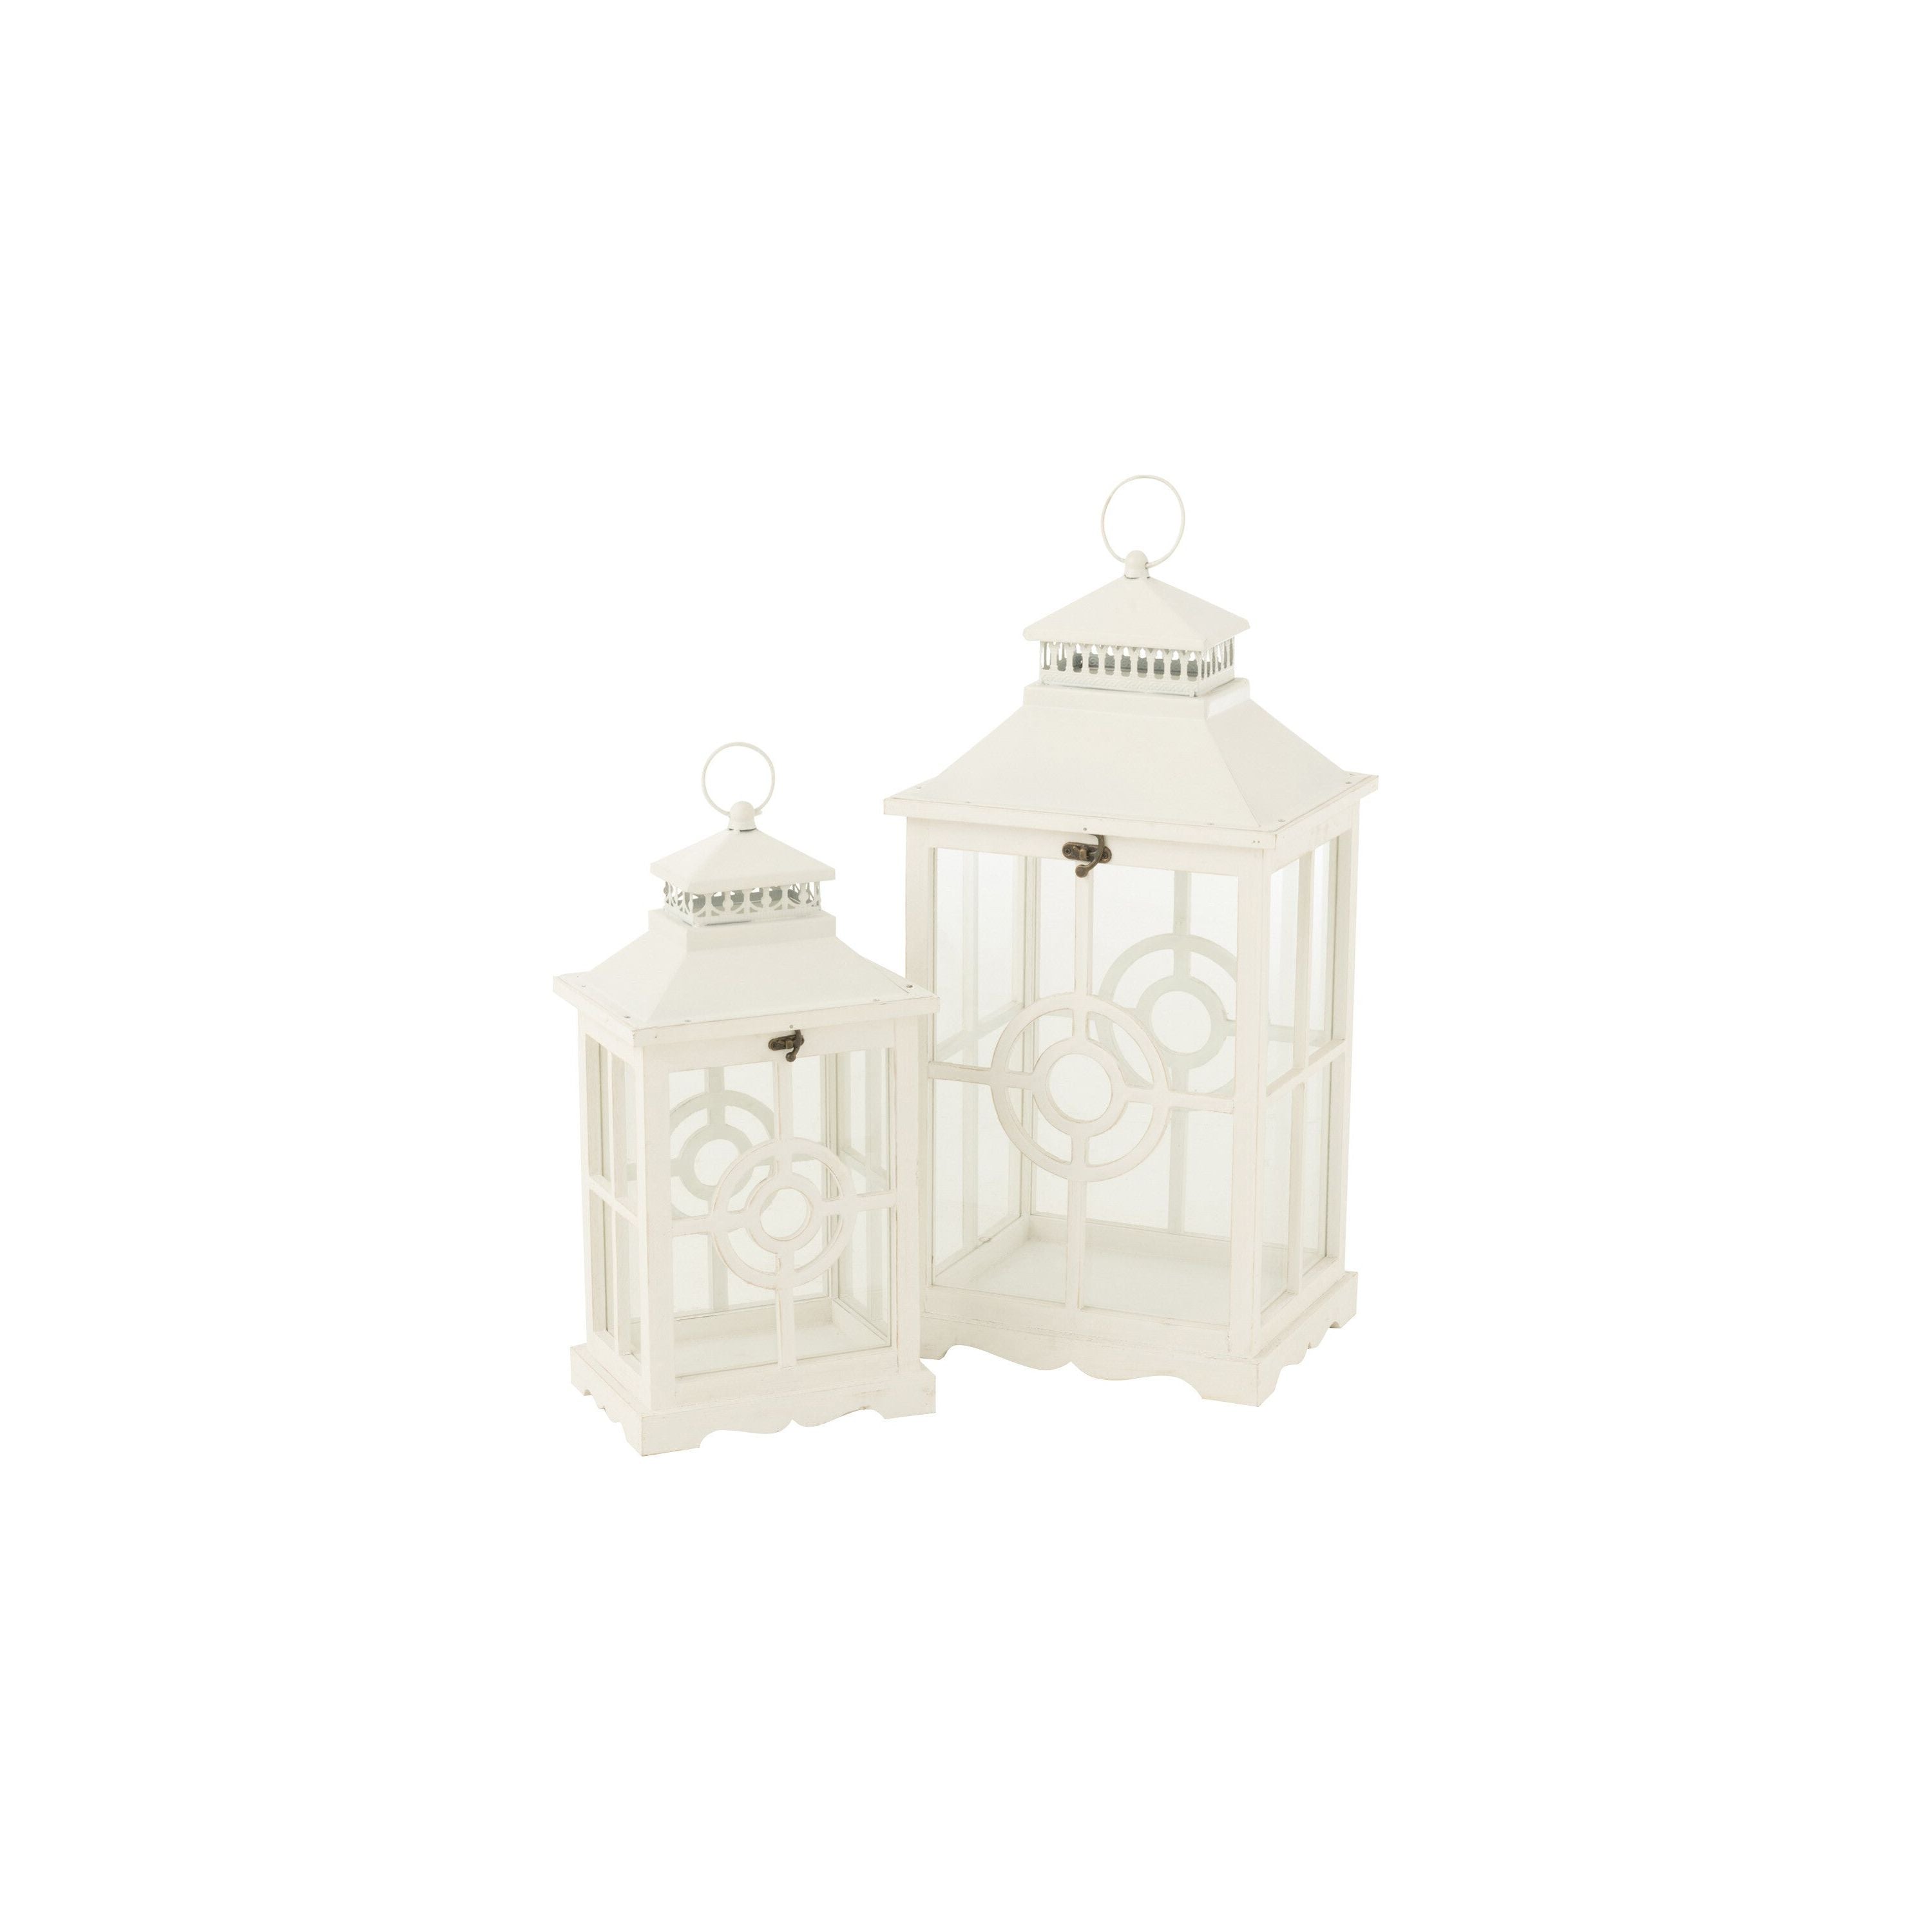 Set Of Two Lanterns Circles Wood White